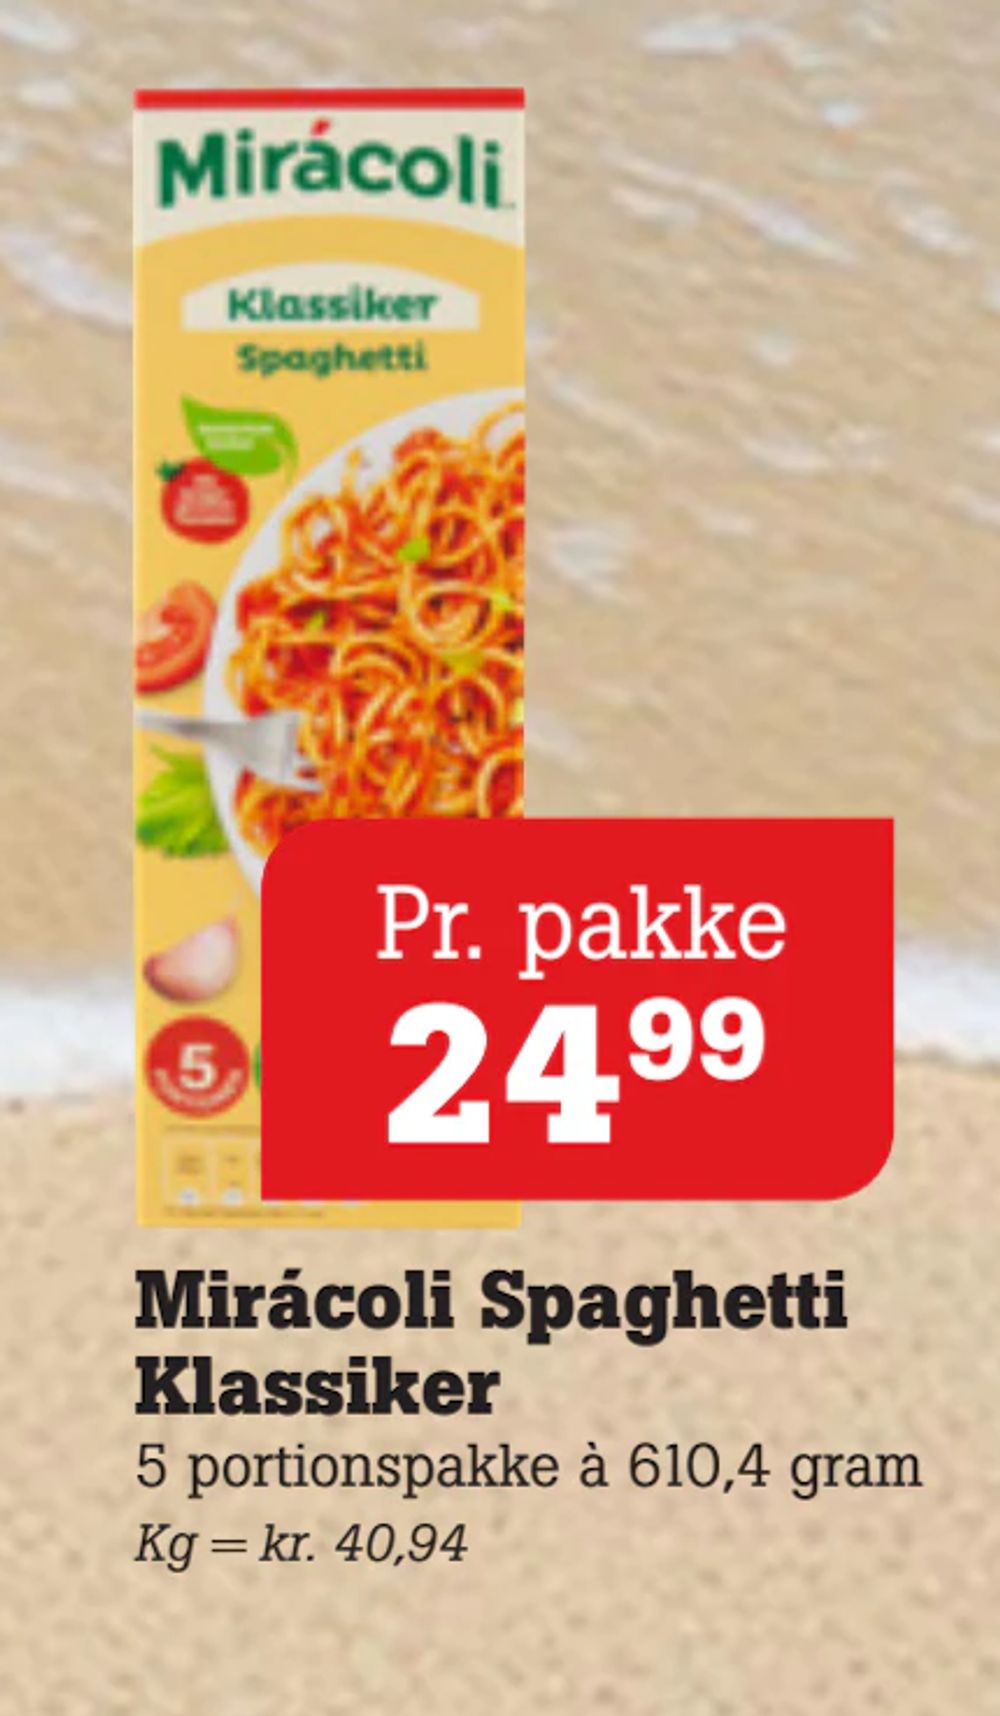 Tilbud på Mirácoli Spaghetti Klassiker fra Poetzsch Padborg til 24,99 kr.